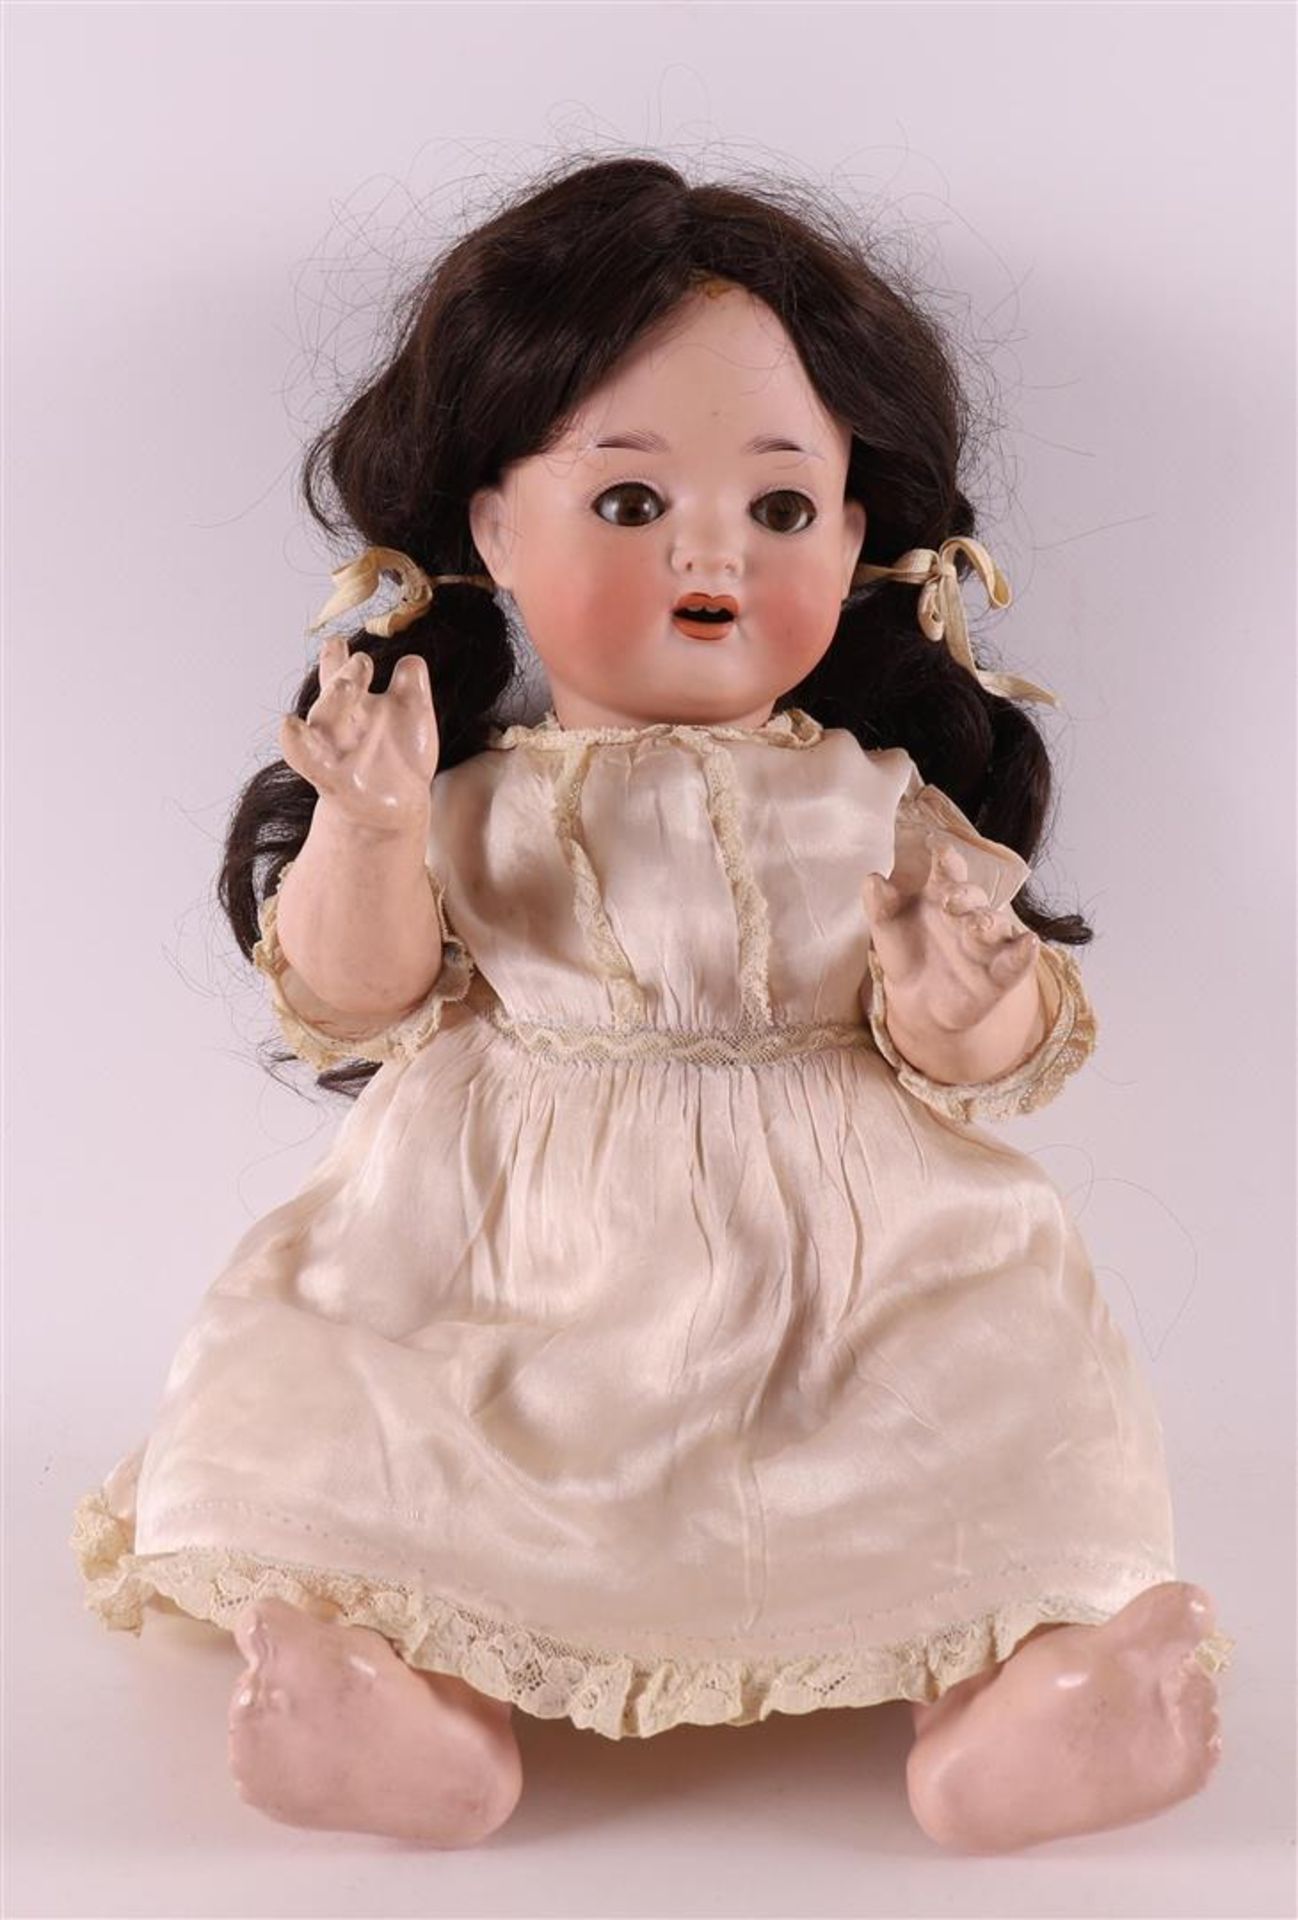 An articulated character doll, Germany, Porzellanfabrik Mengersgereuth 23, circa